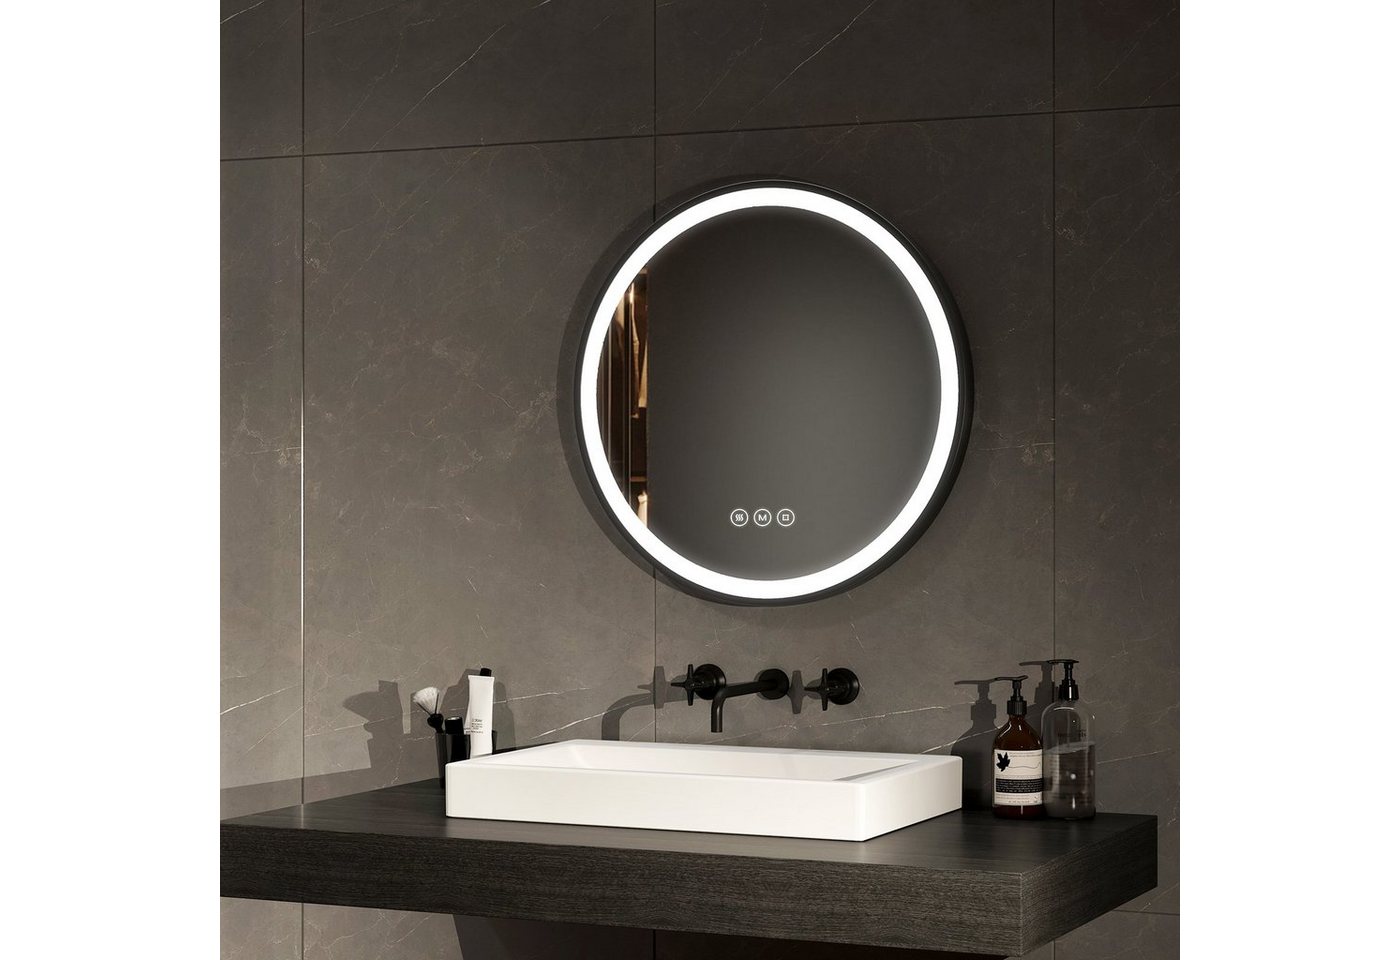 EMKE Badspiegel Antibeschlage Badezimmerspiegel mit schwarzem Rahmen, 3 Lichtfarben Dimmbar, Memory-Funktion Φ 50-80 cm von EMKE